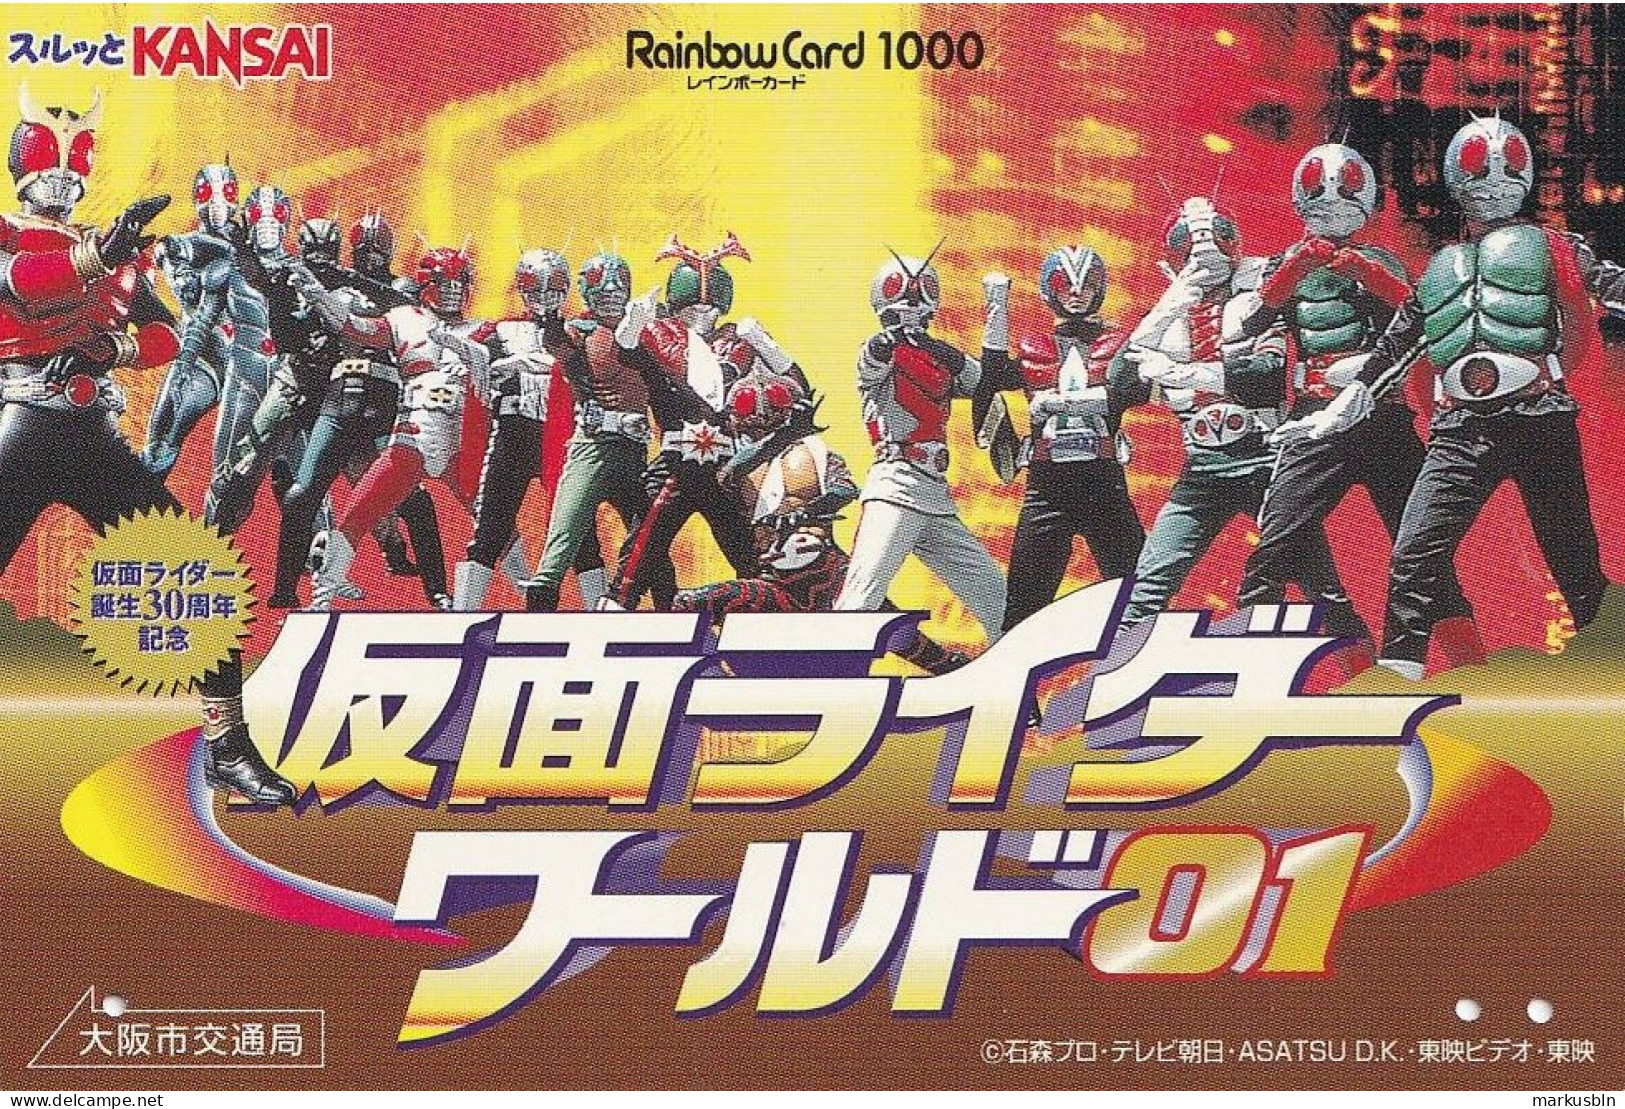 Japan Prepaid Rainbow Card 1000 - Masked Kamen Rider TV - Japan